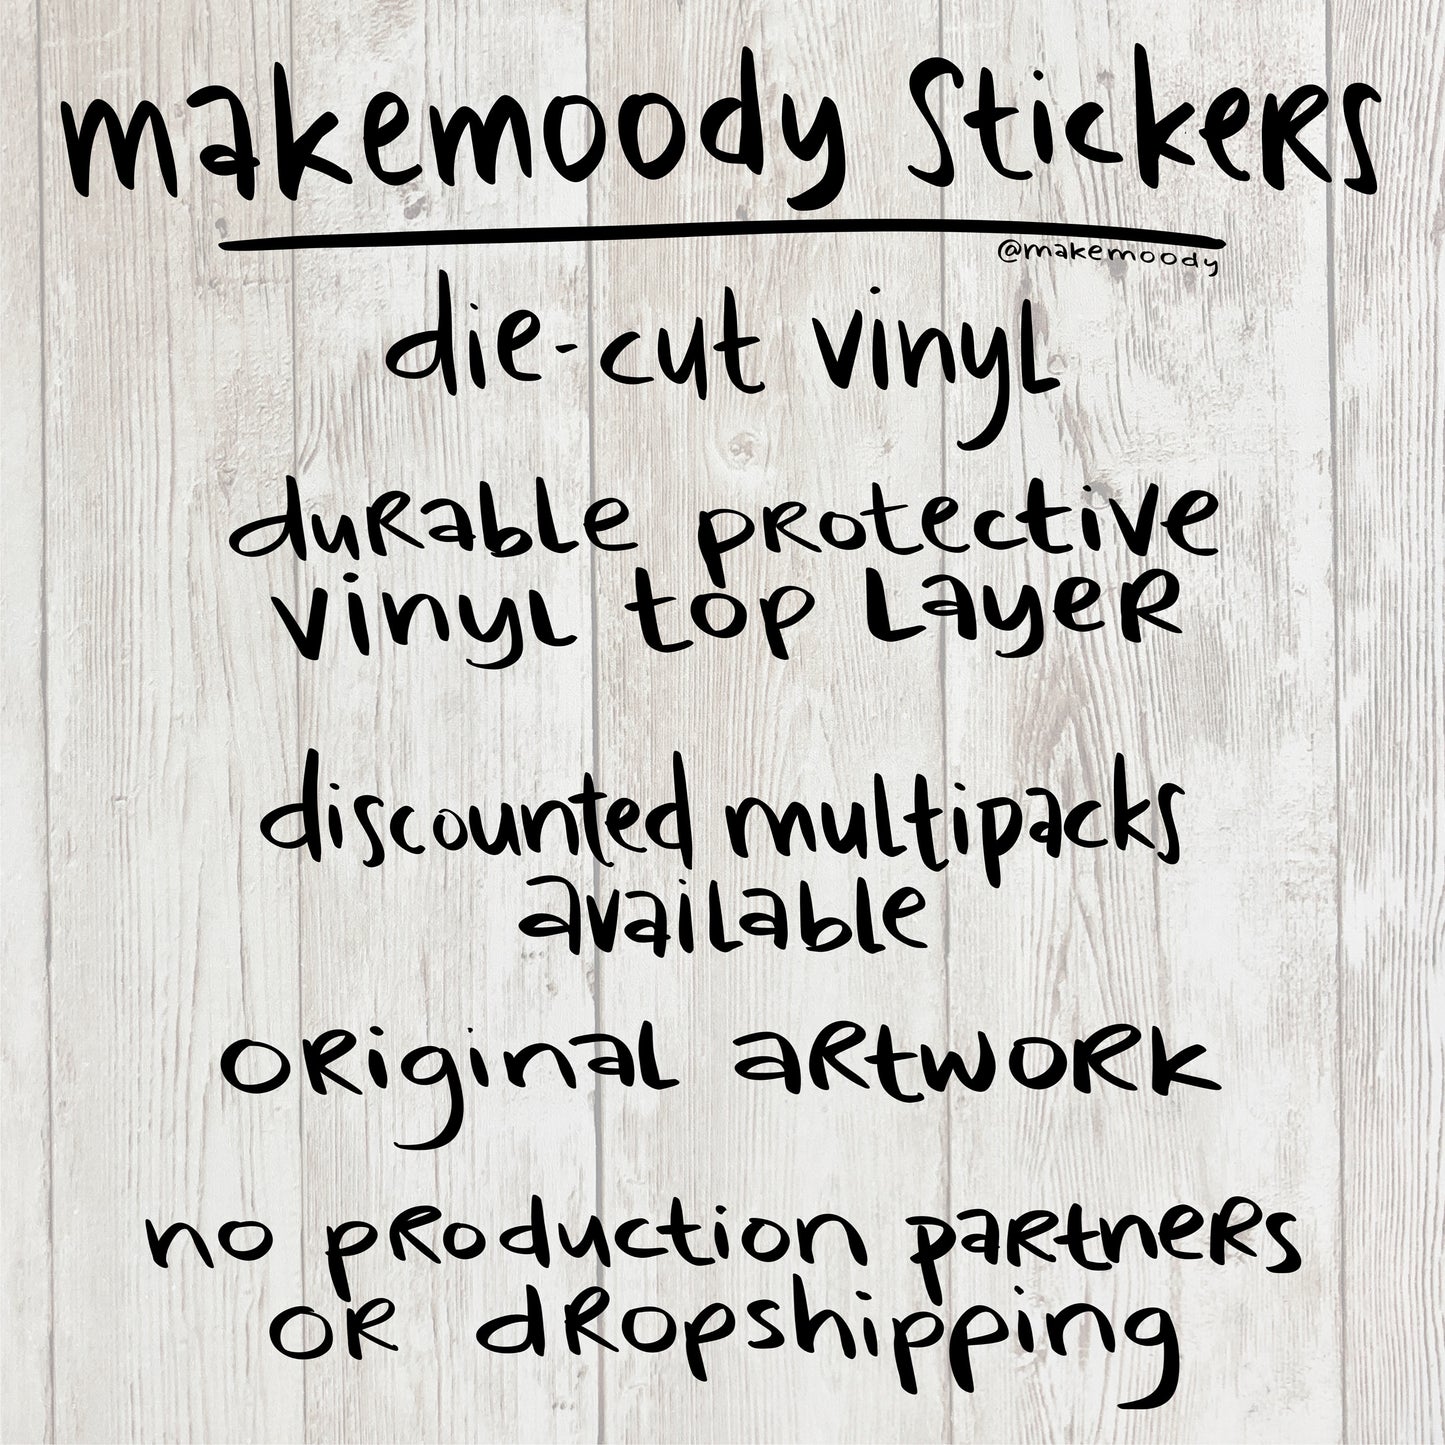 Scream Into the Void STICKER - Vinyl Decal Sticker - I Scream, You Scream, We all Scream, Void Sticker, Mental Health Sticker, Funny Sticker